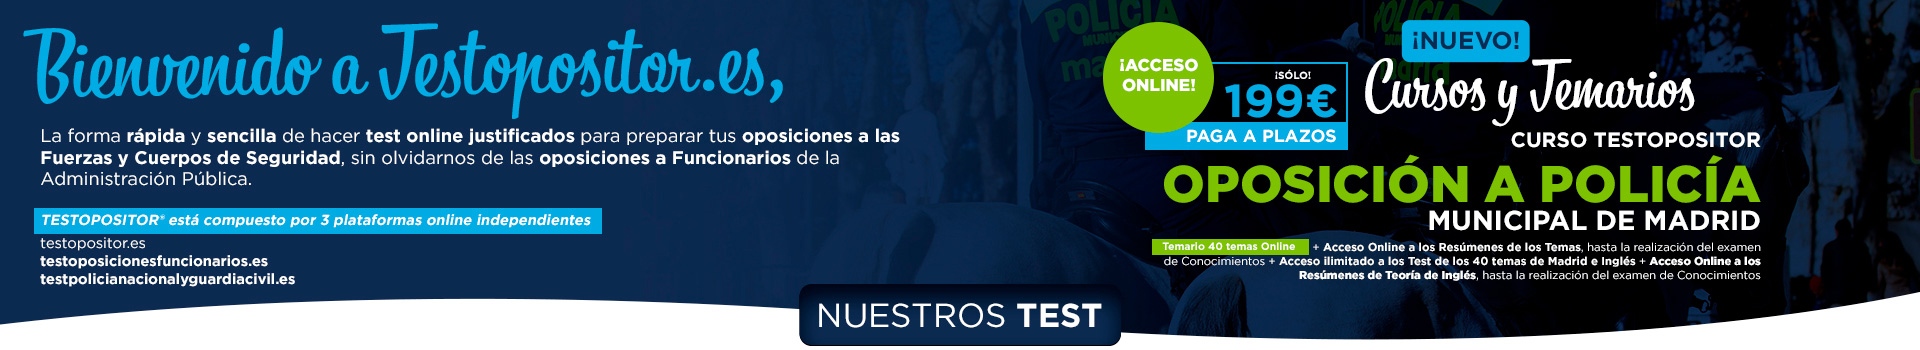 Test Online Justificados para oposiciones a Policia Local y Policia Municipal en Madrid. Test Constitución Española e Inglés.